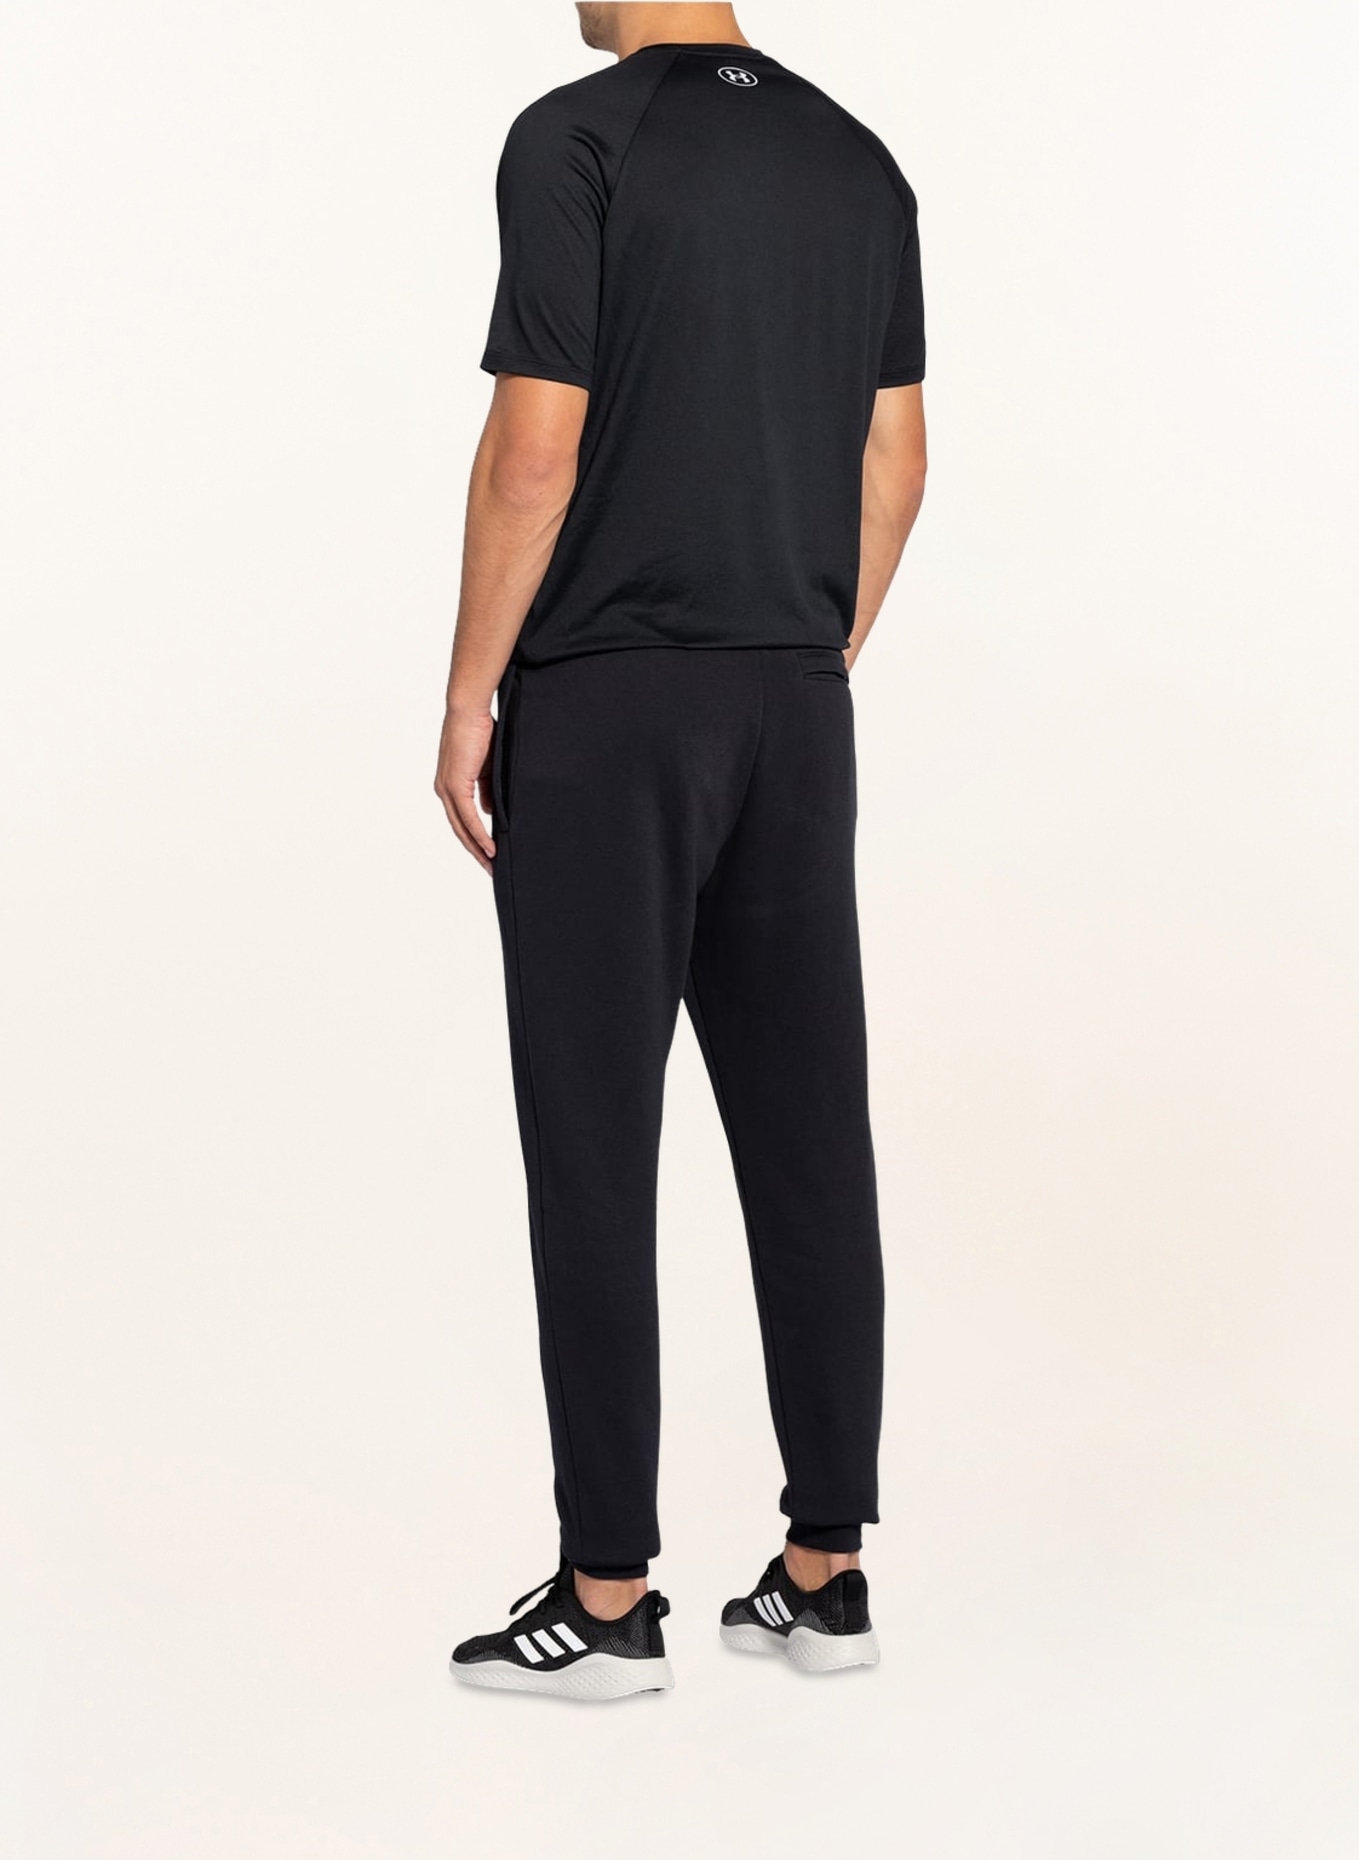 UNDER ARMOUR Sweatpants RIVAL, Color: BLACK (Image 3)